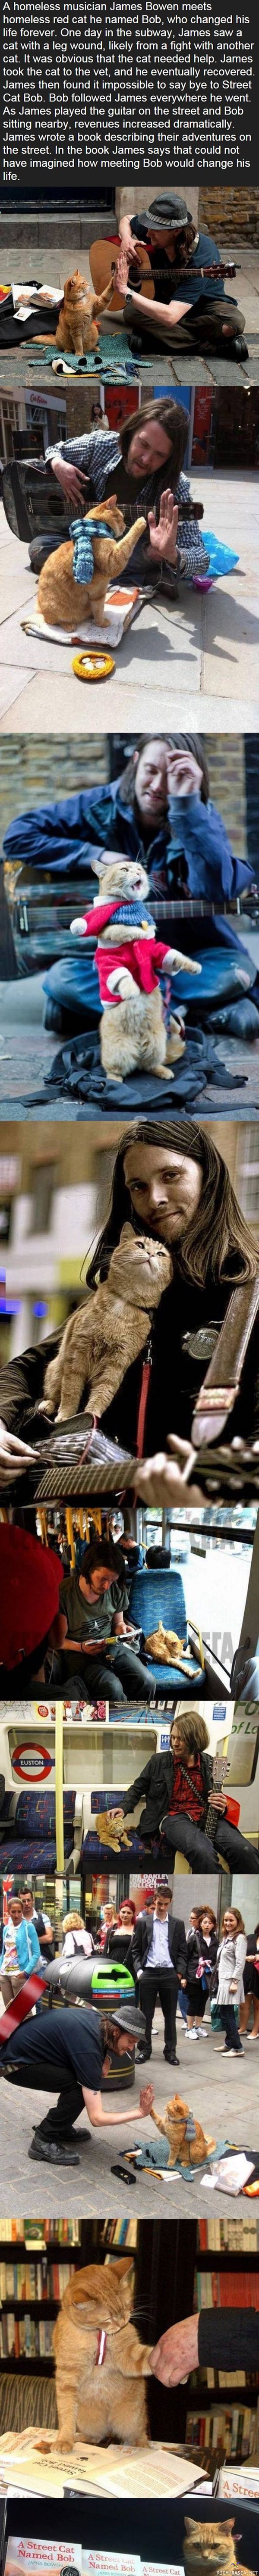 Koditon muusikko ja kissa